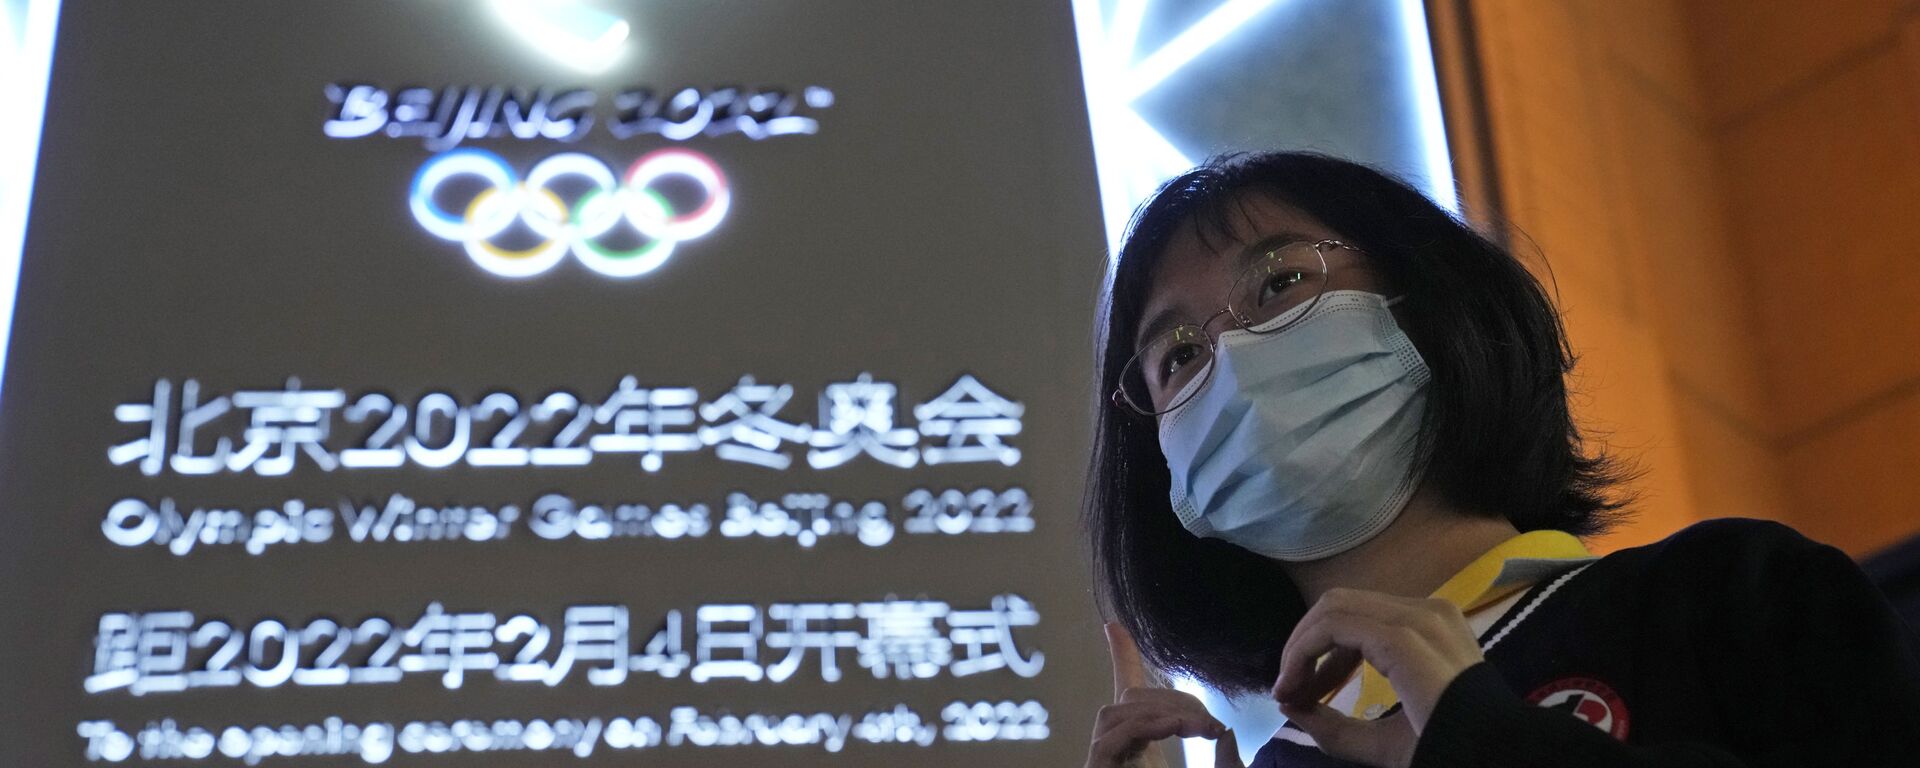 Отсчет времени до старта Олимпийских игр в Пекине  - Sputnik 日本, 1920, 27.01.2022